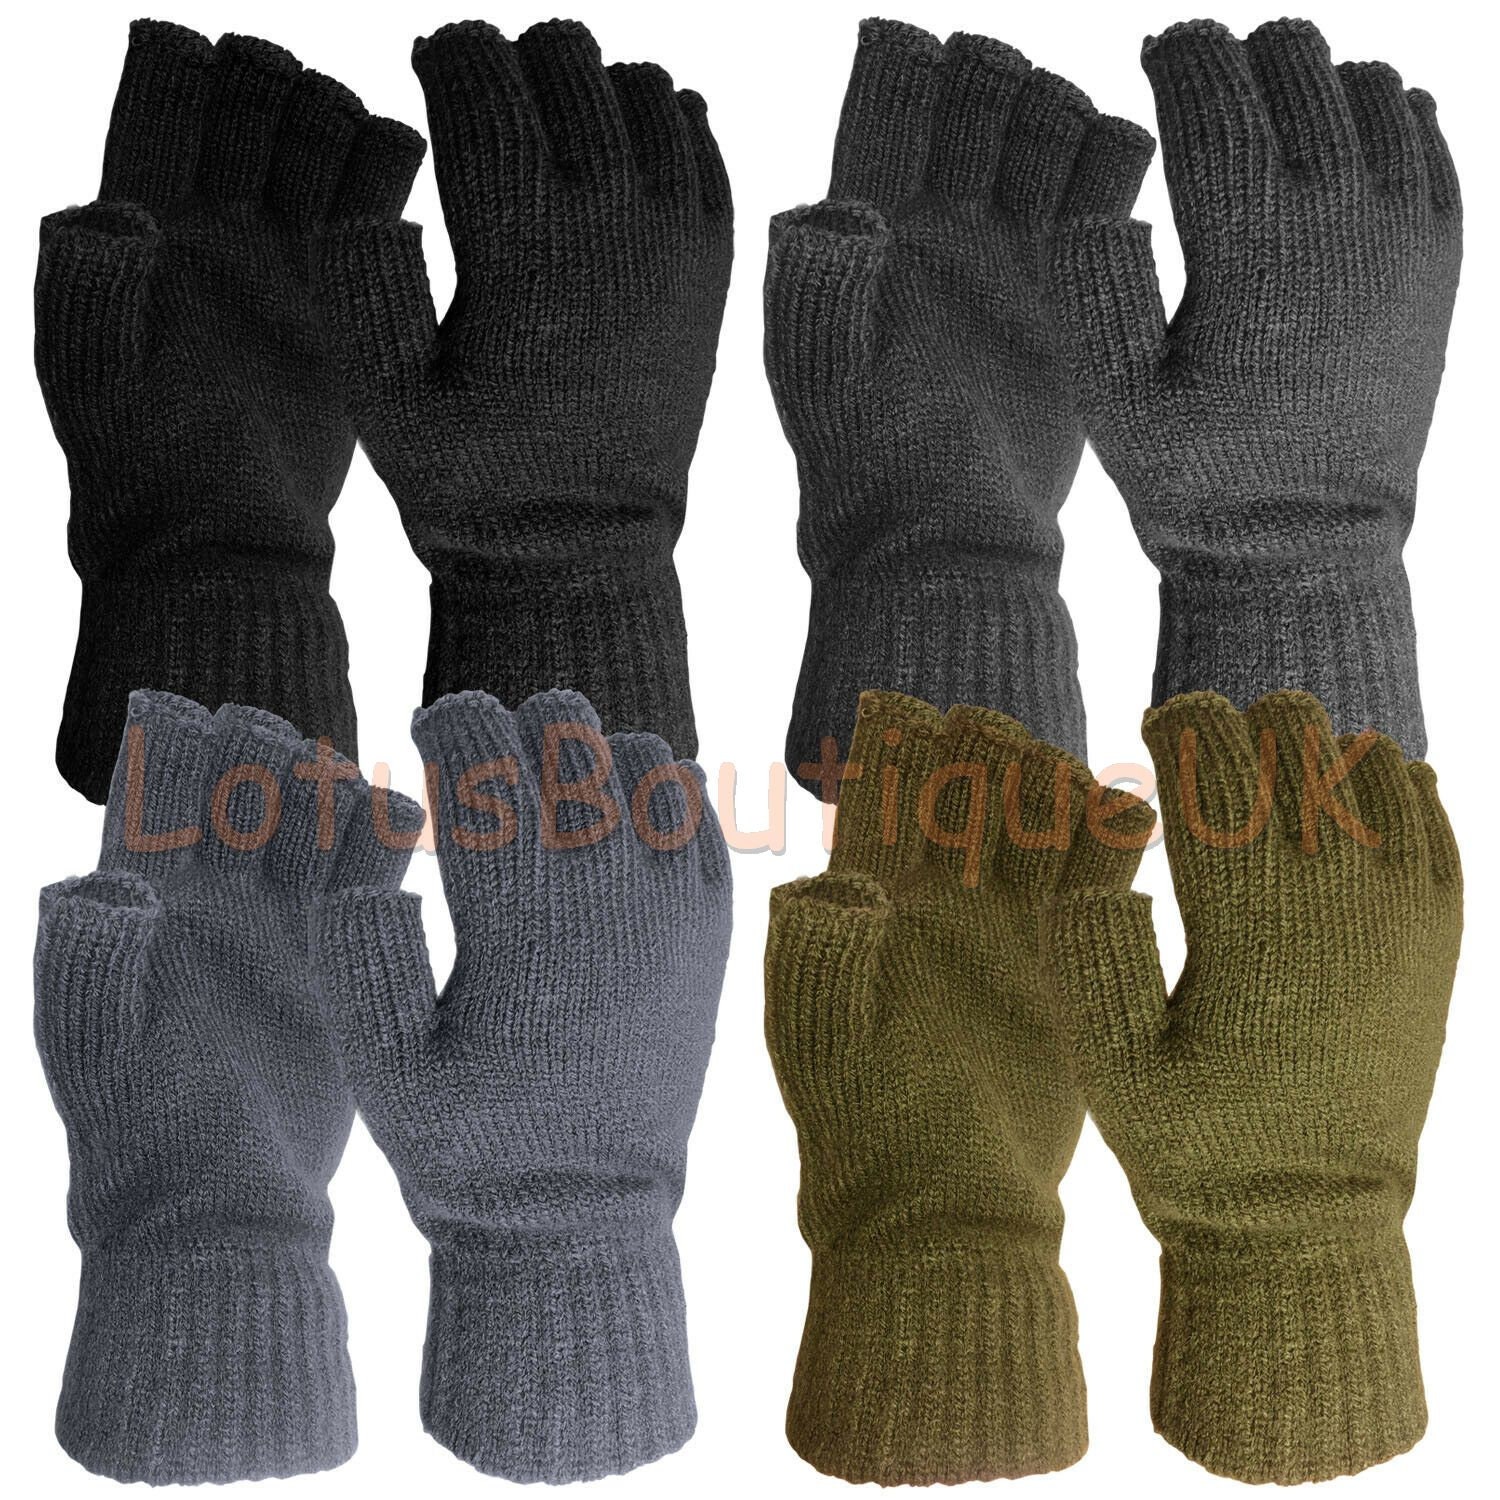 Thermal FINGERLESS GLOVES Unisex Mens Women Knitted Warm Winter Half Finger  UK 